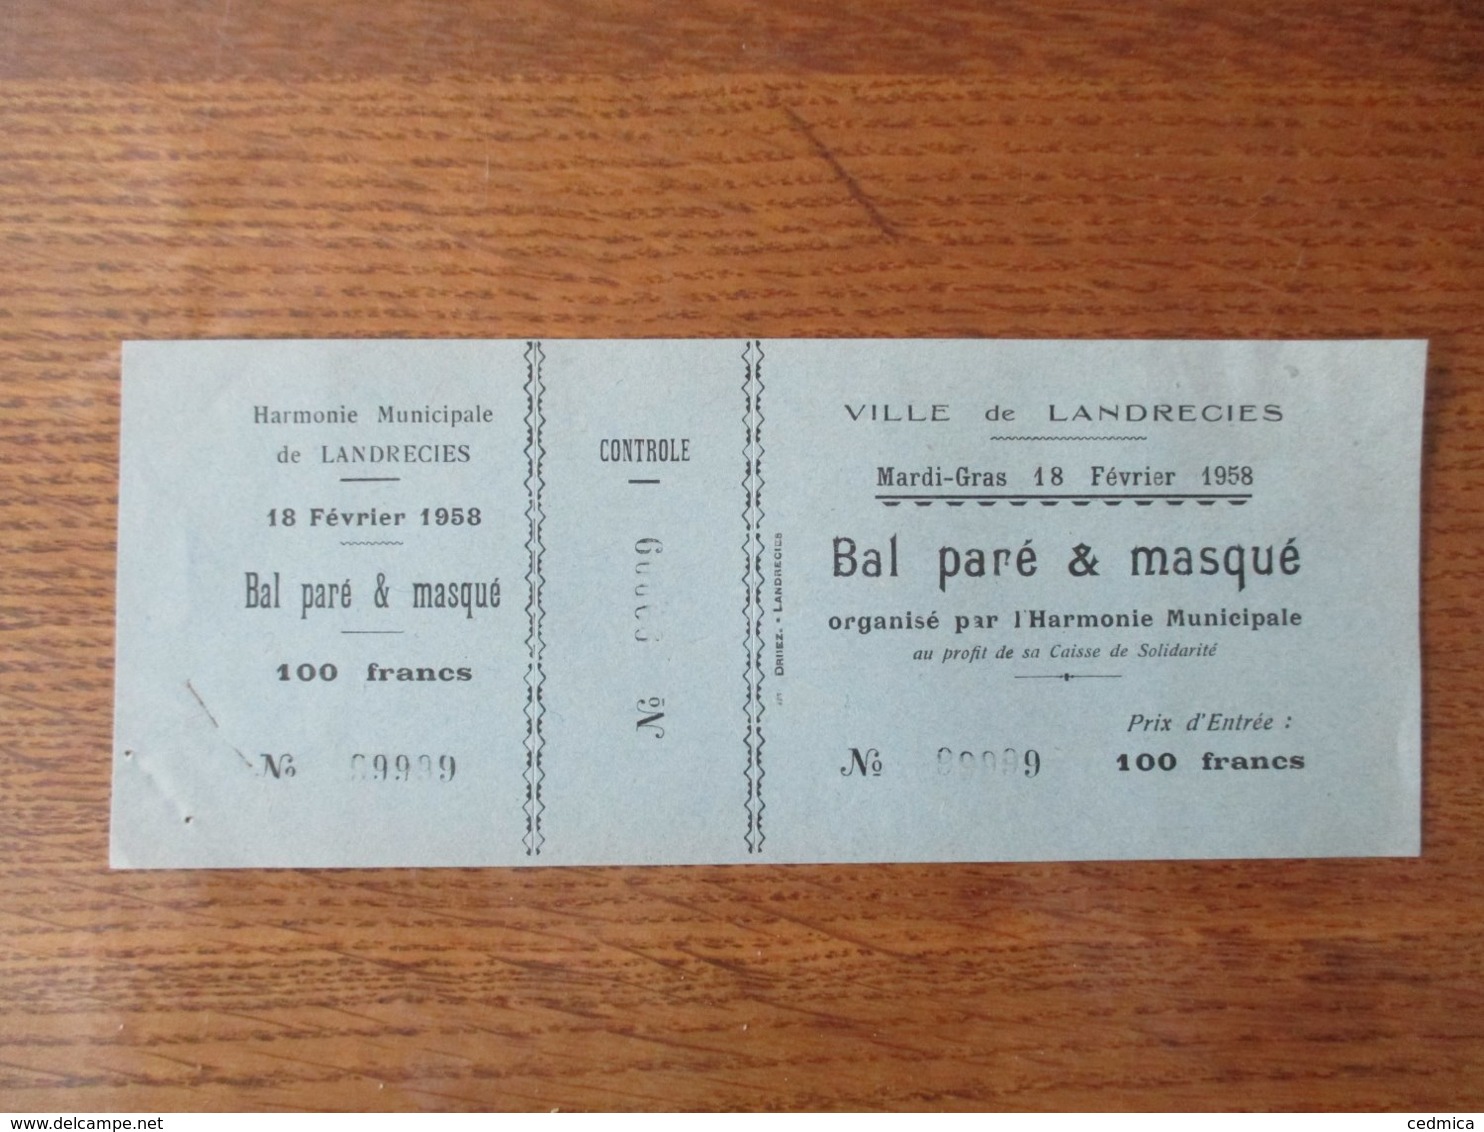 VILLE DE LANDRECIES MARDI-GRAS 18 FEVRIER 1958 BAL PARE & MASQUE ORGANISE PAR L'HARMONIE MUNICIPALE - Toegangskaarten